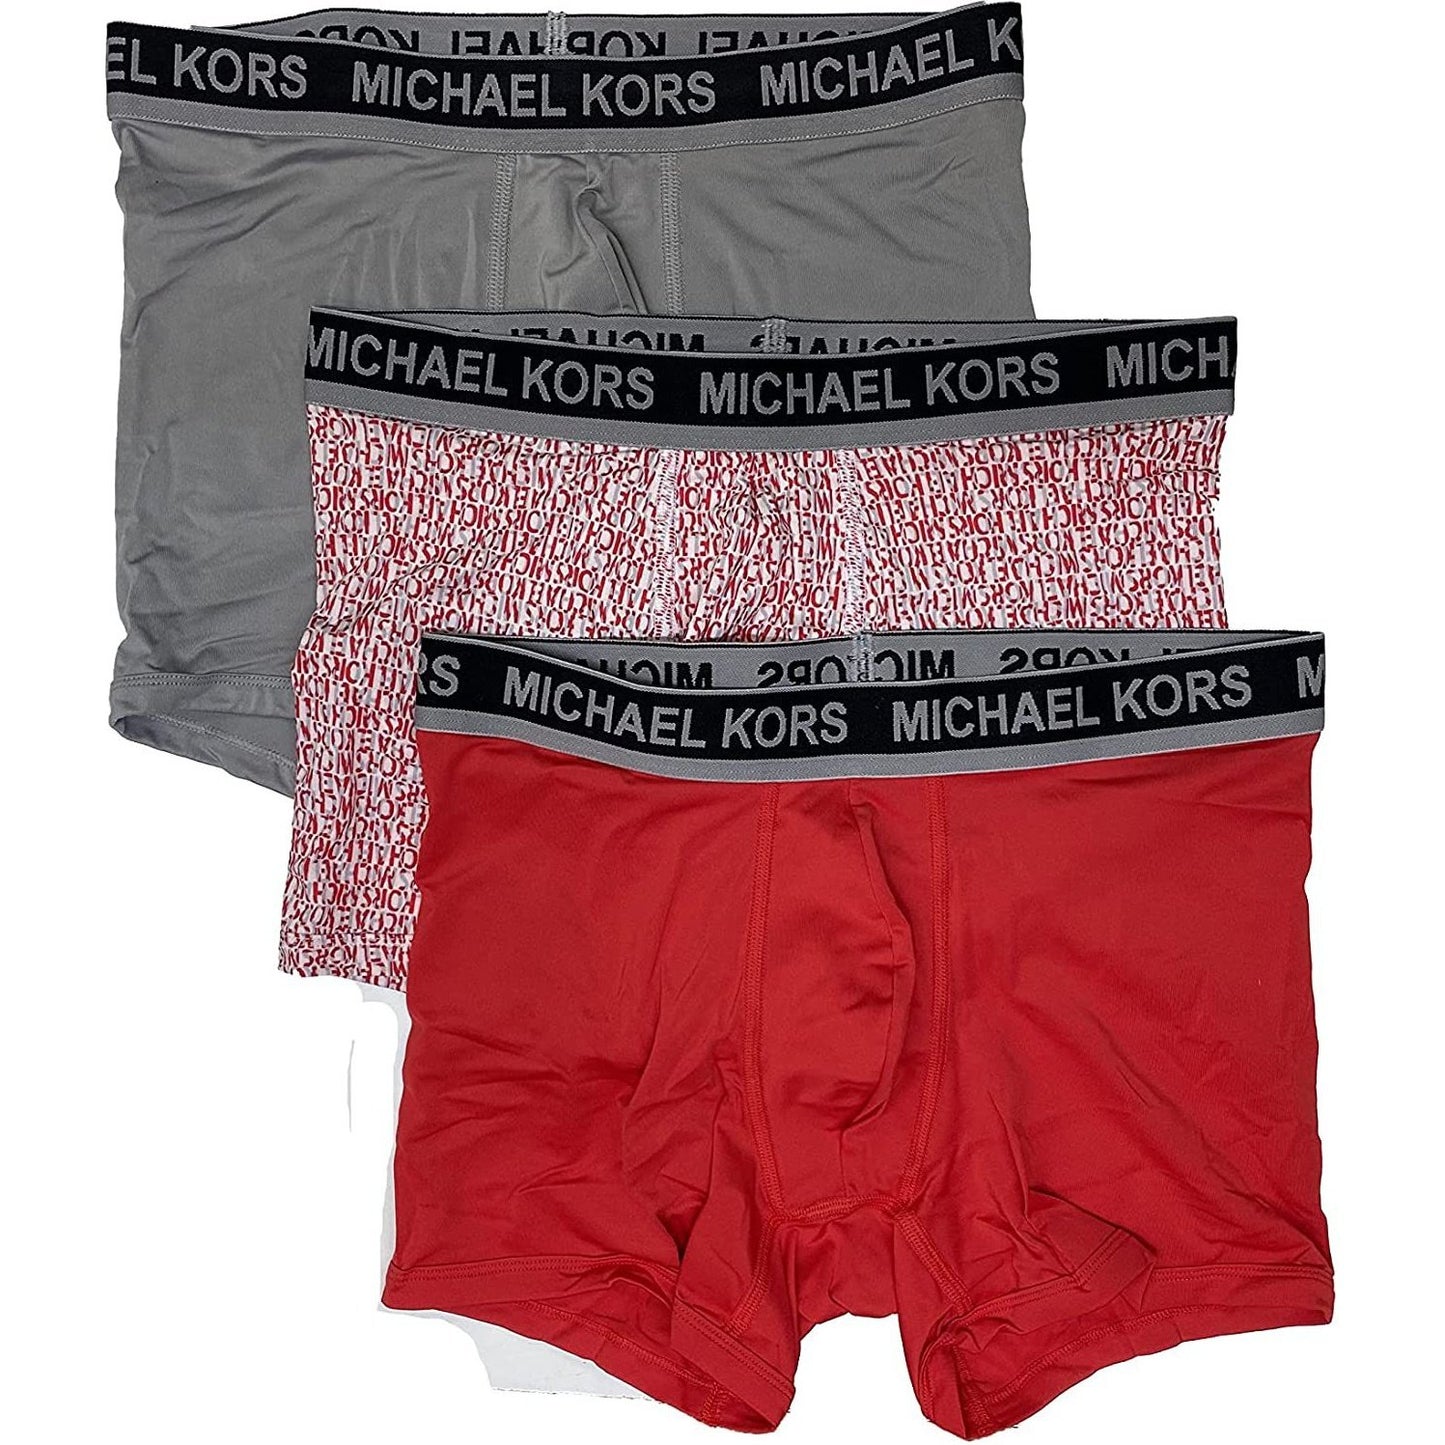 Boxer Michael Kors, 3 unid, color: gris, rosado/rojo y rojo. (M)